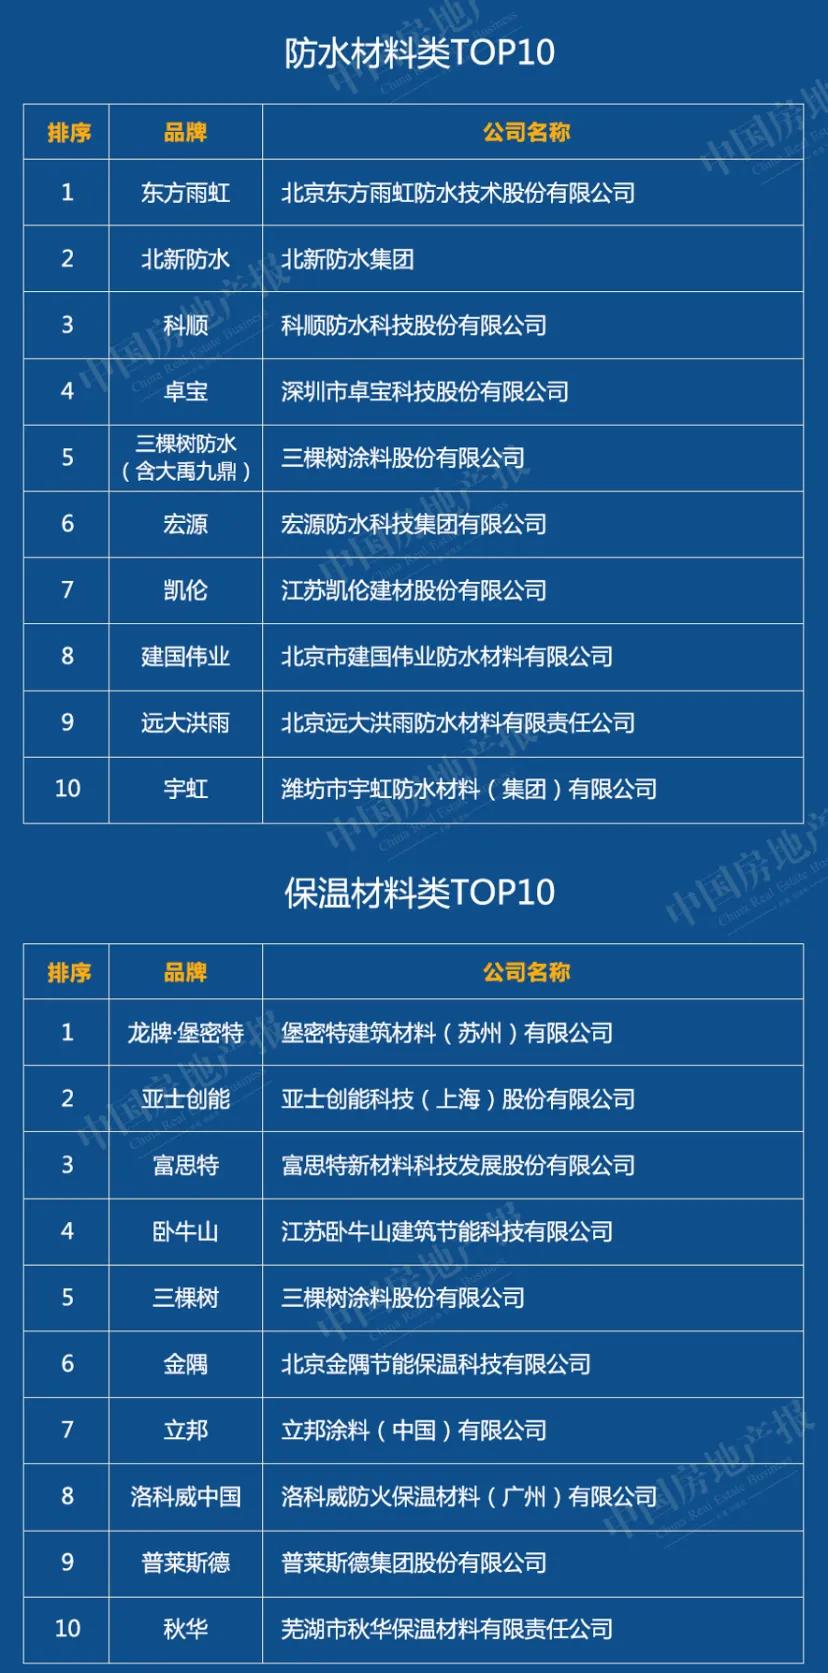 2020中国绿色建筑TOP排行榜系列榜单解读